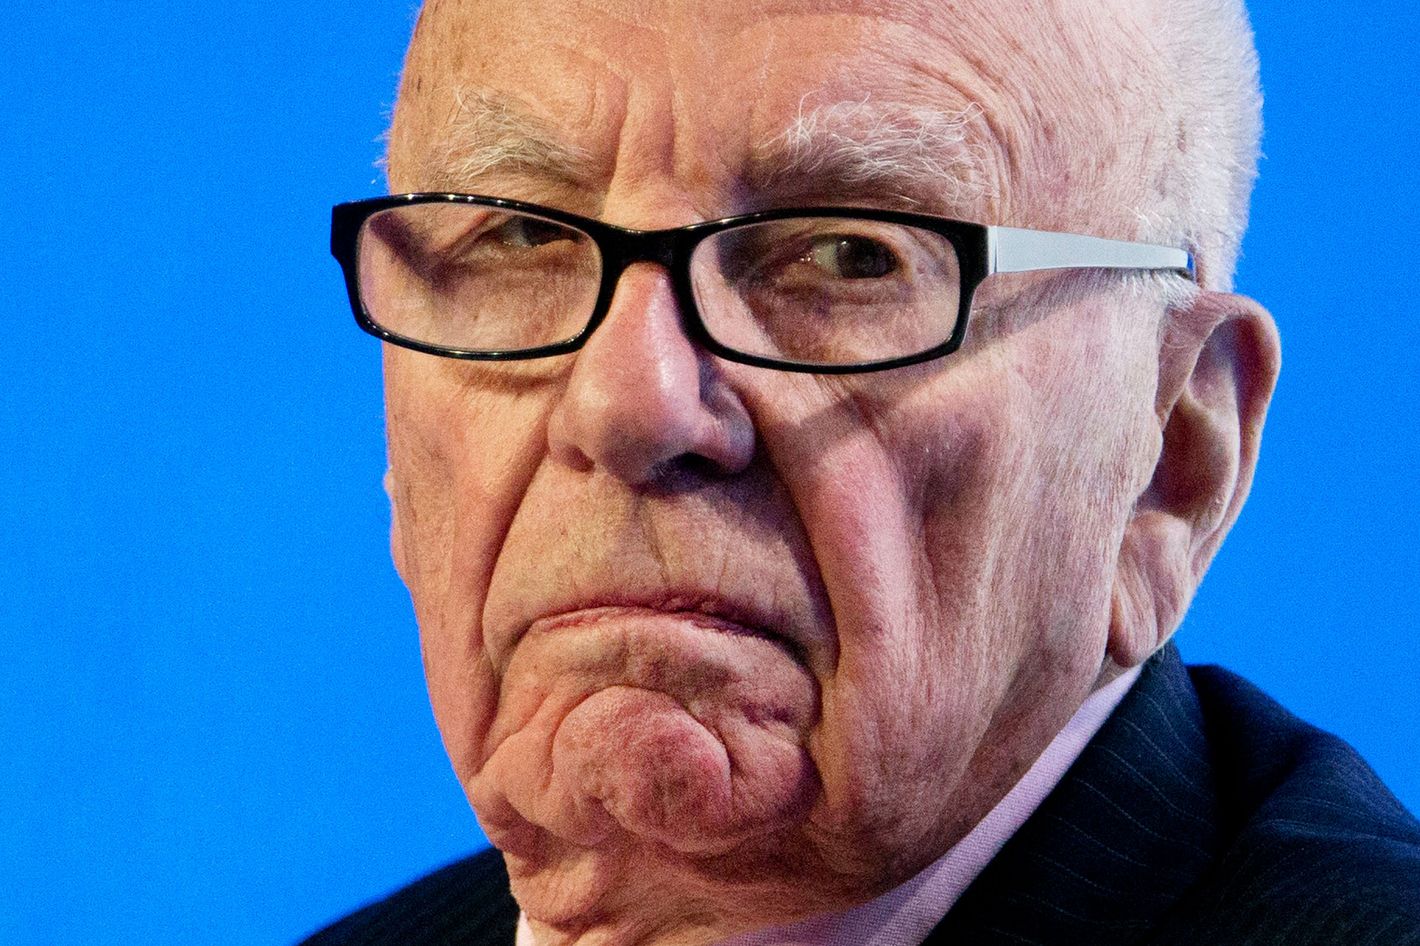 What does Rupert Murdoch own?